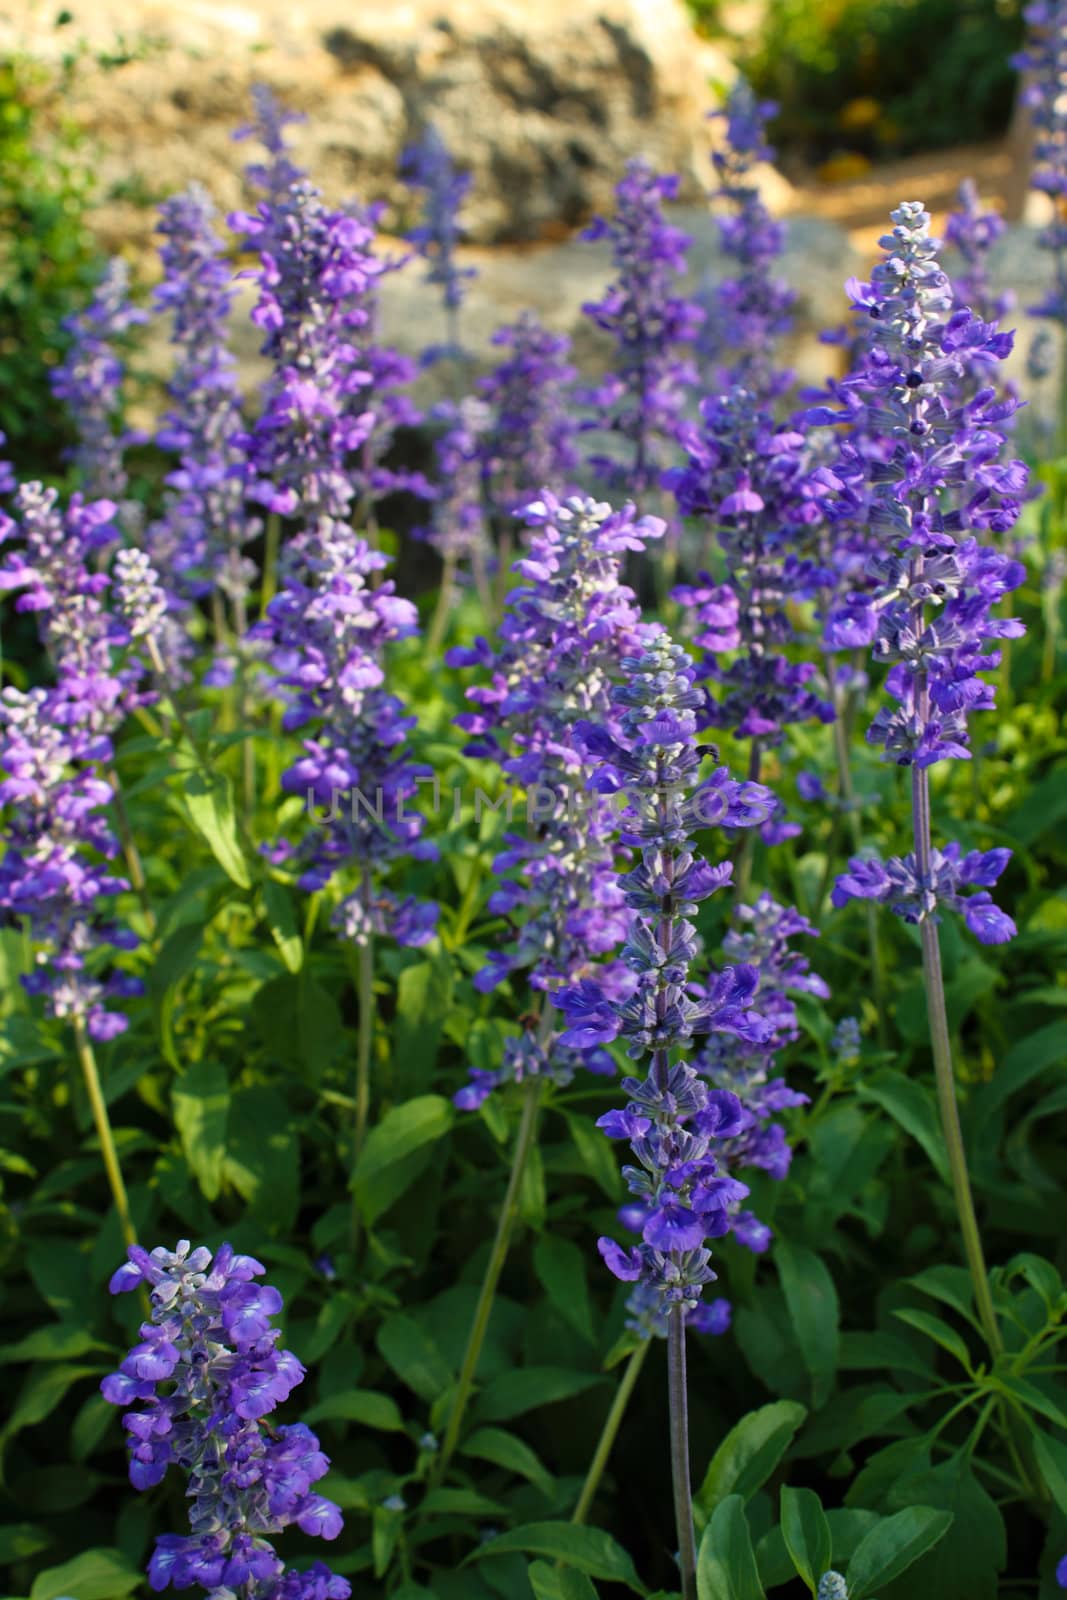 Purple flowers on field background